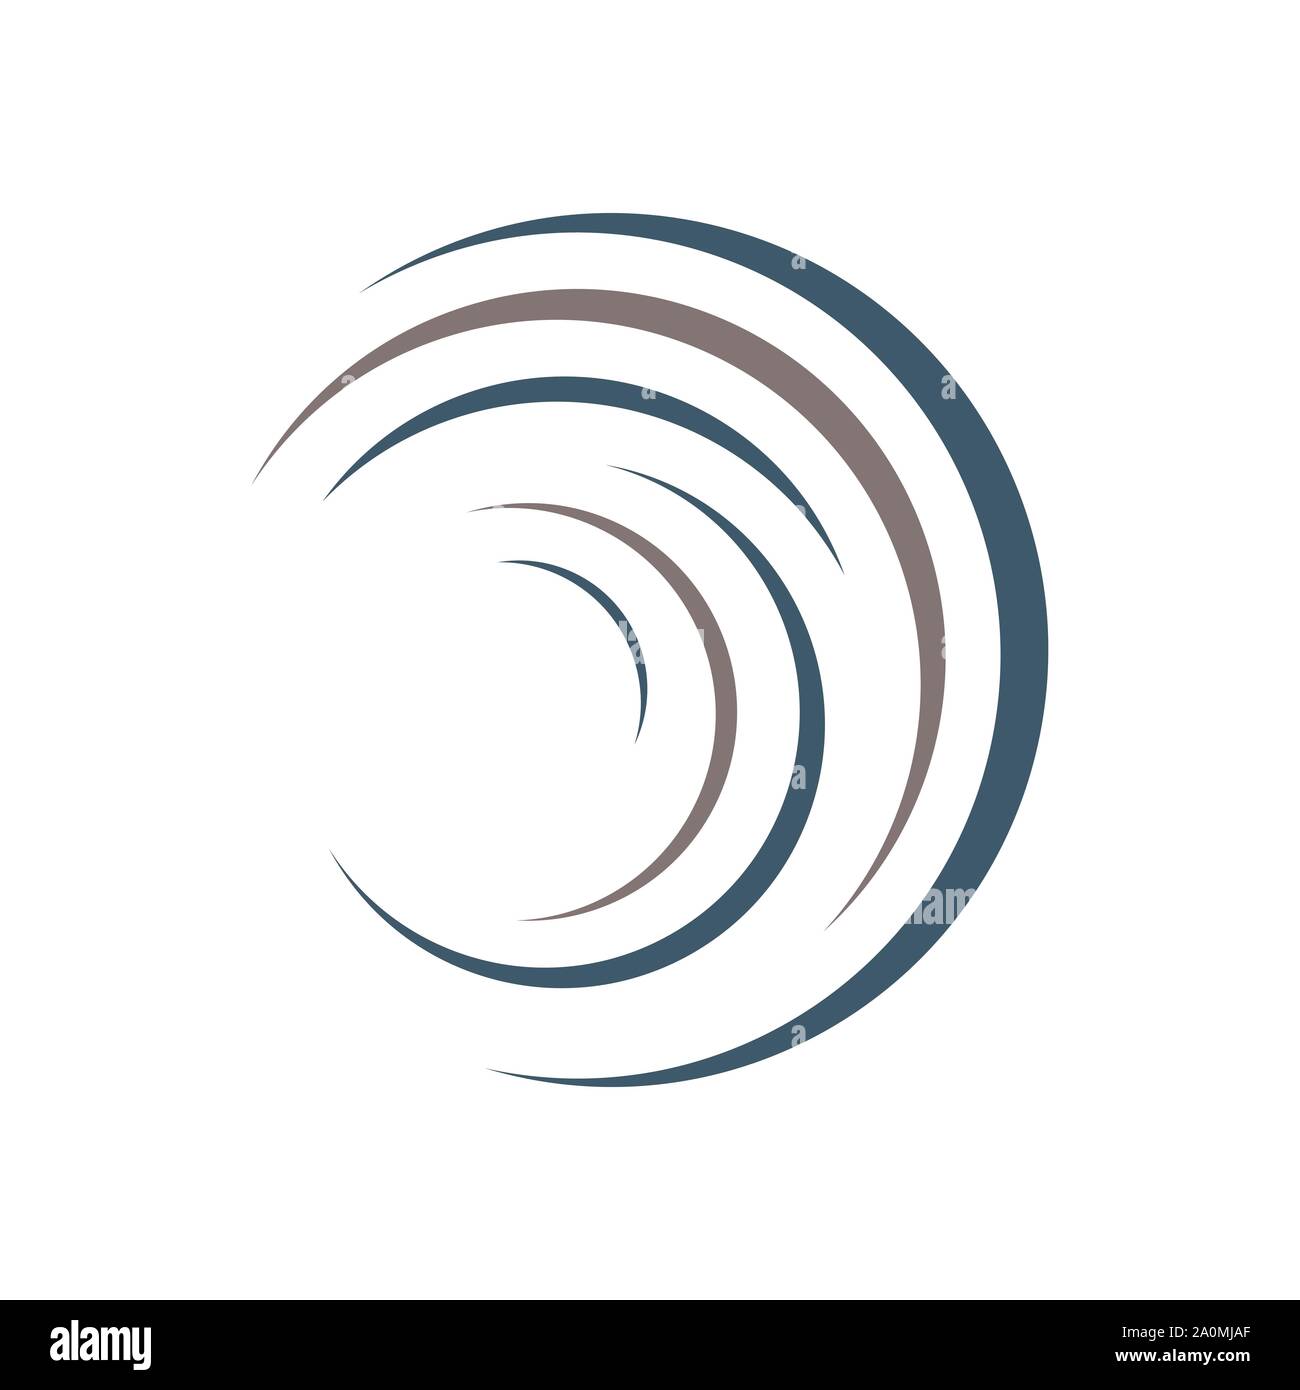 Cerchio astratto logo design grafico vettoriale modello di elemento Illustrazione Vettoriale